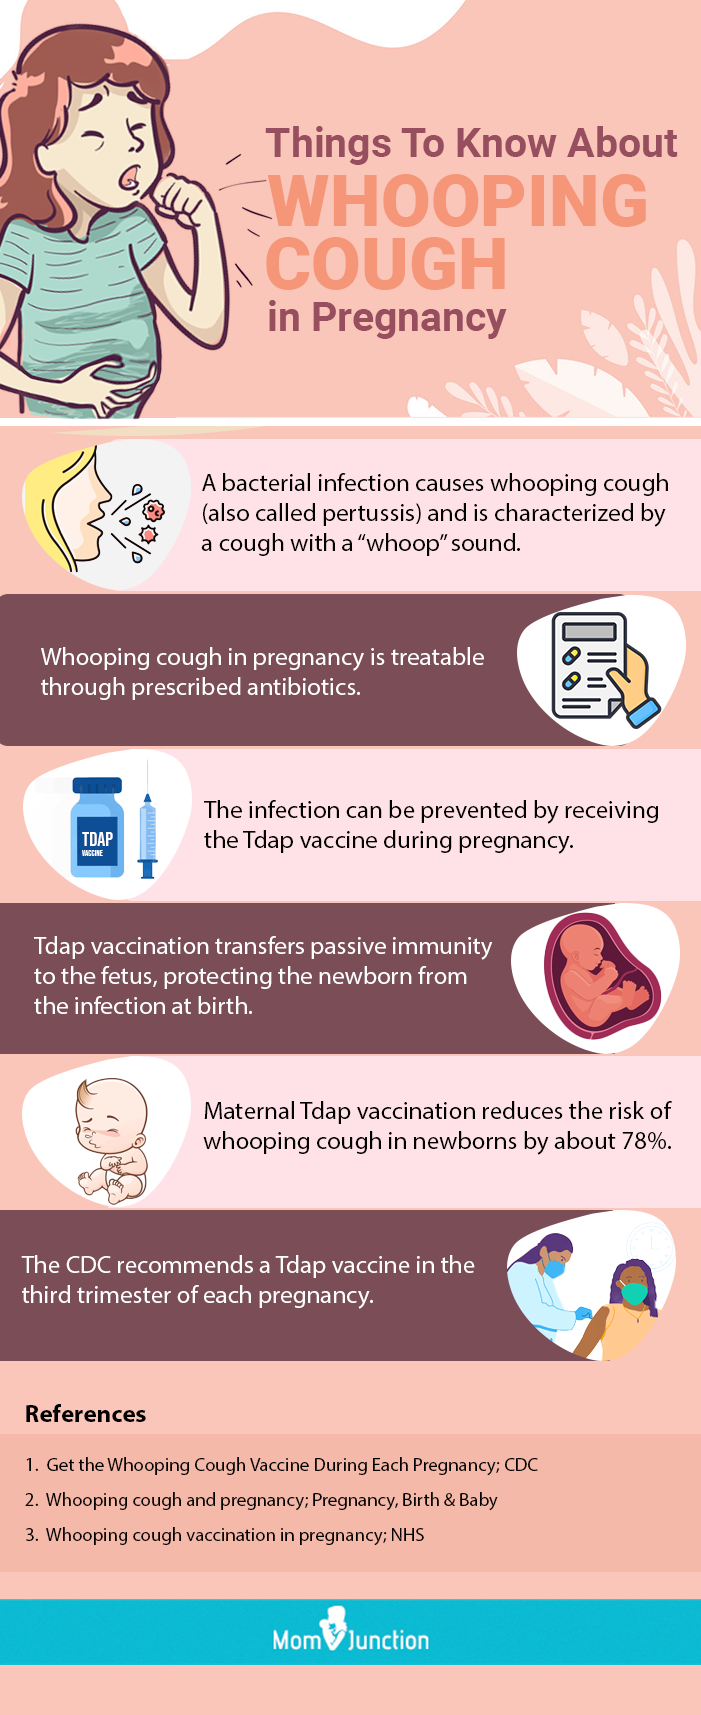 tosse e resfriado na gravidez são opções de tratamento seguras durante cada trimestre quando consultar um médico